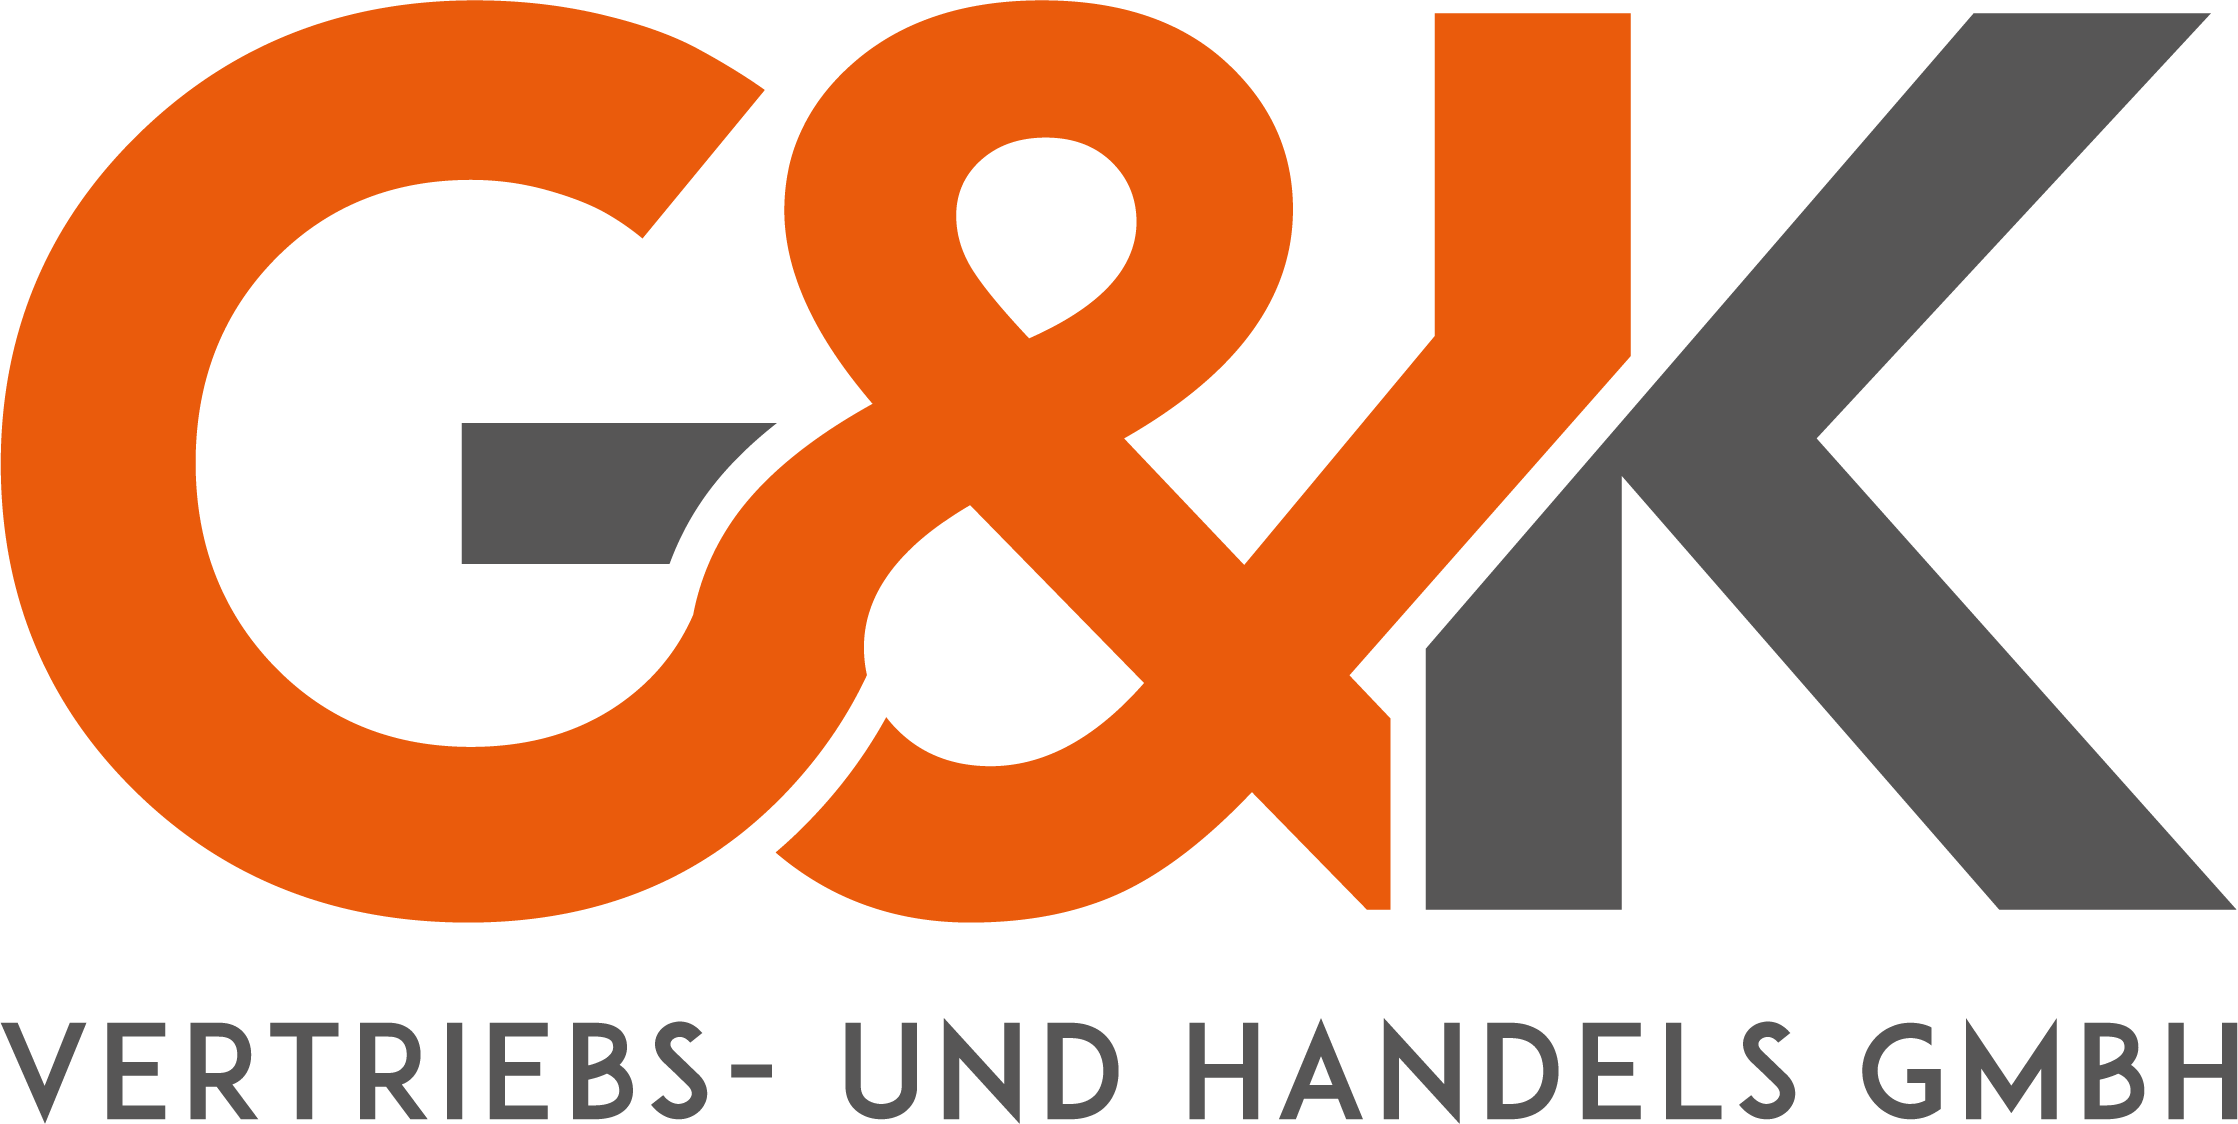 G&K Vertriebs- und Handels GmbH